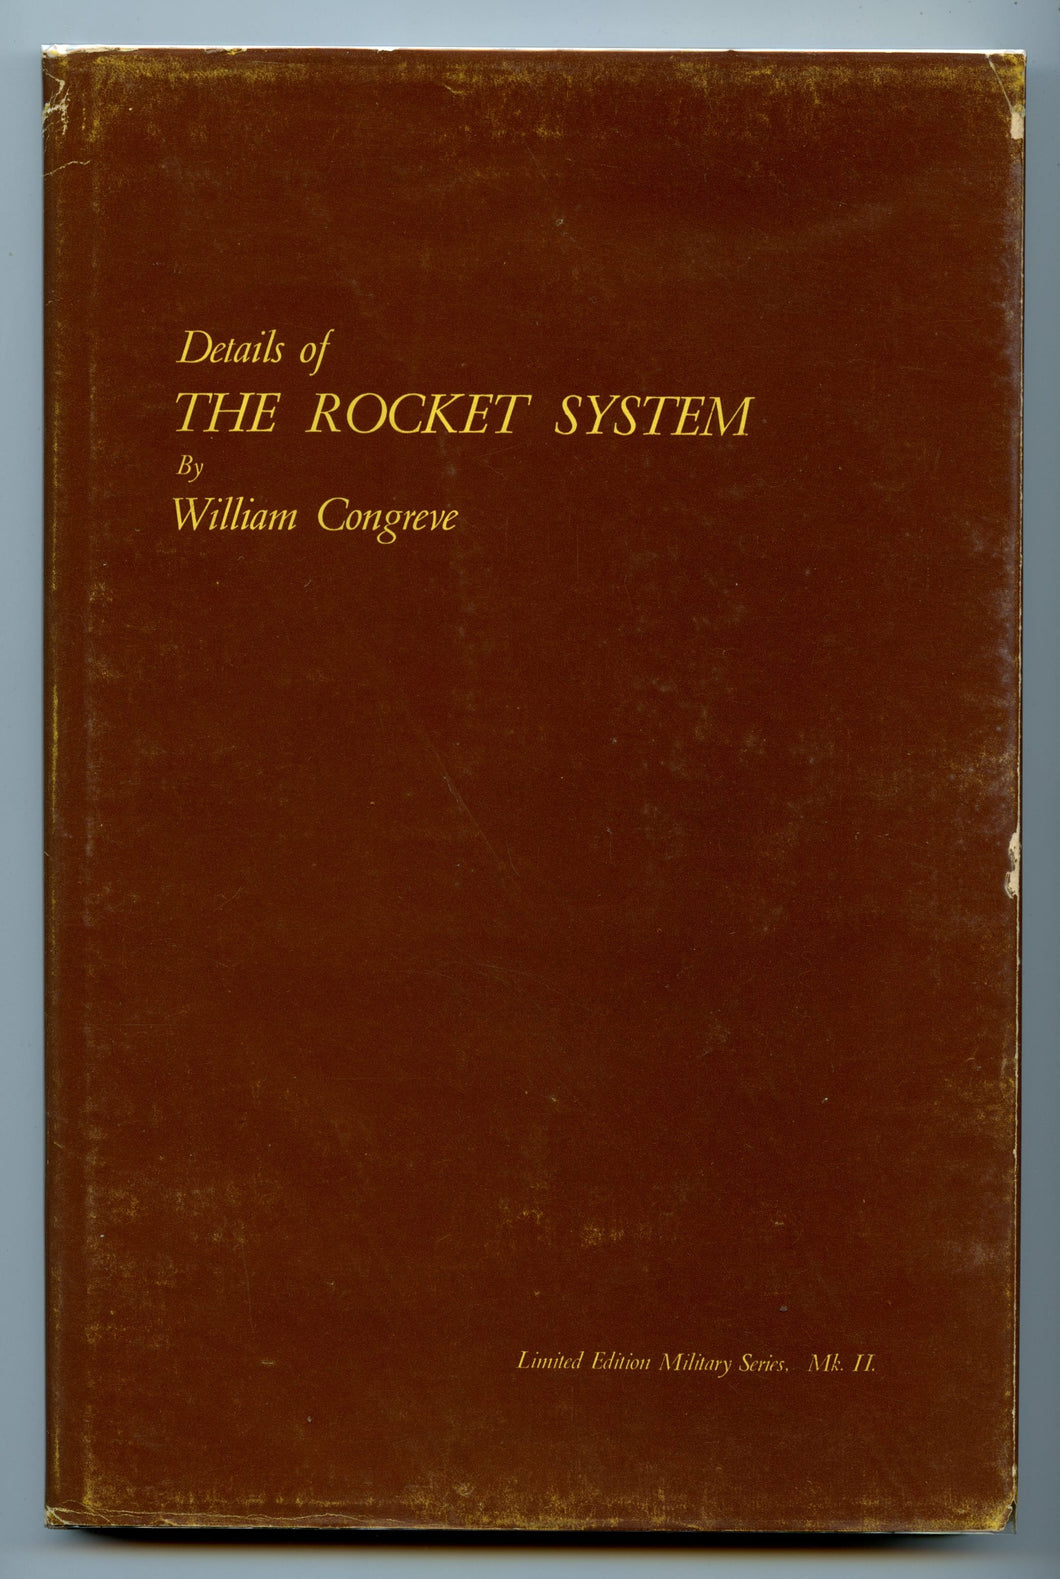 Details of the Rocket System